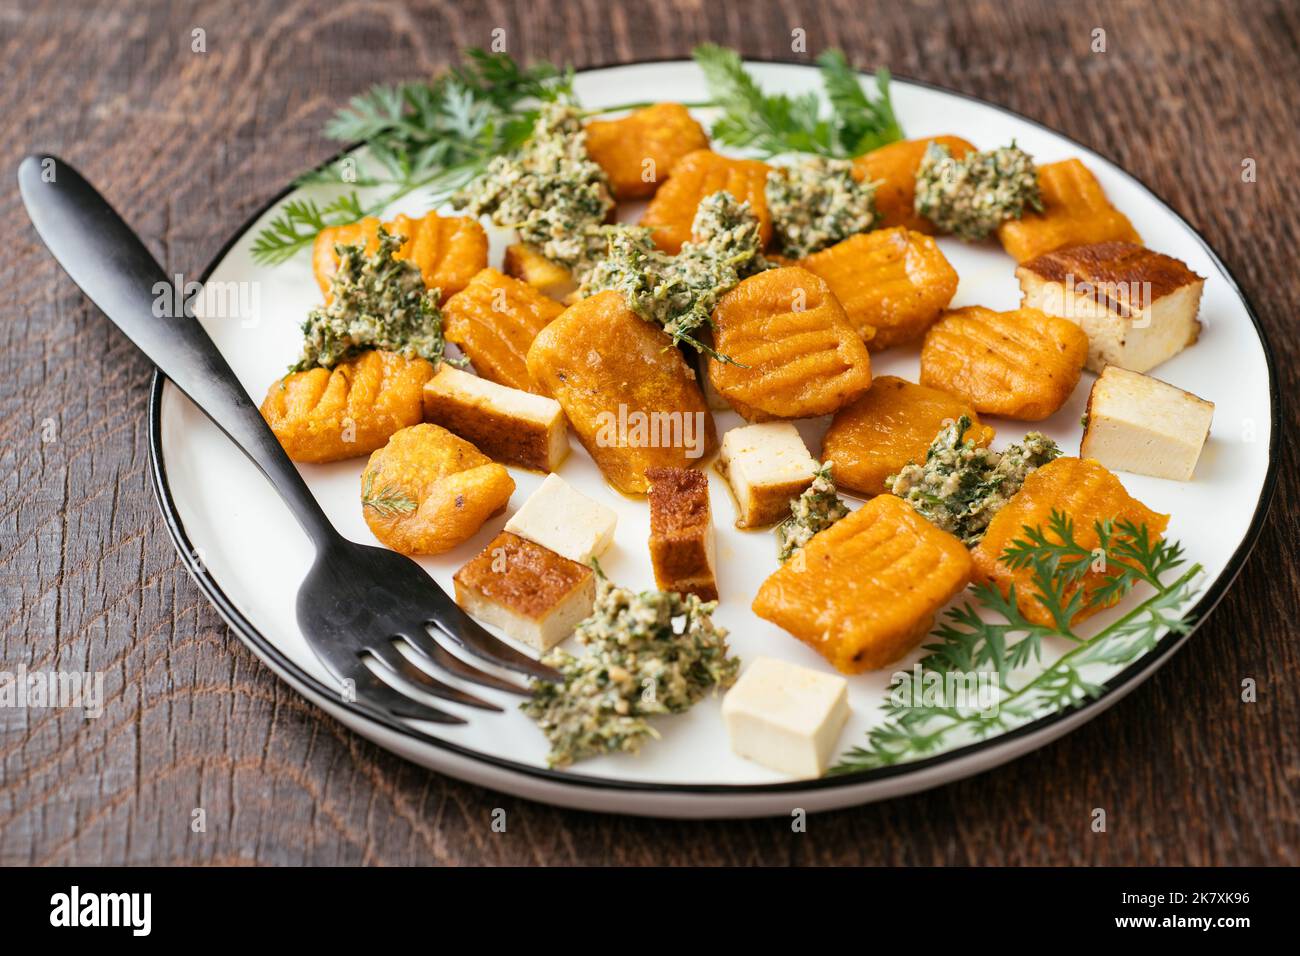 Piatto con gnocchi di carote fatti in casa con pesto sulla carota e tofu affumicato. Foto Stock